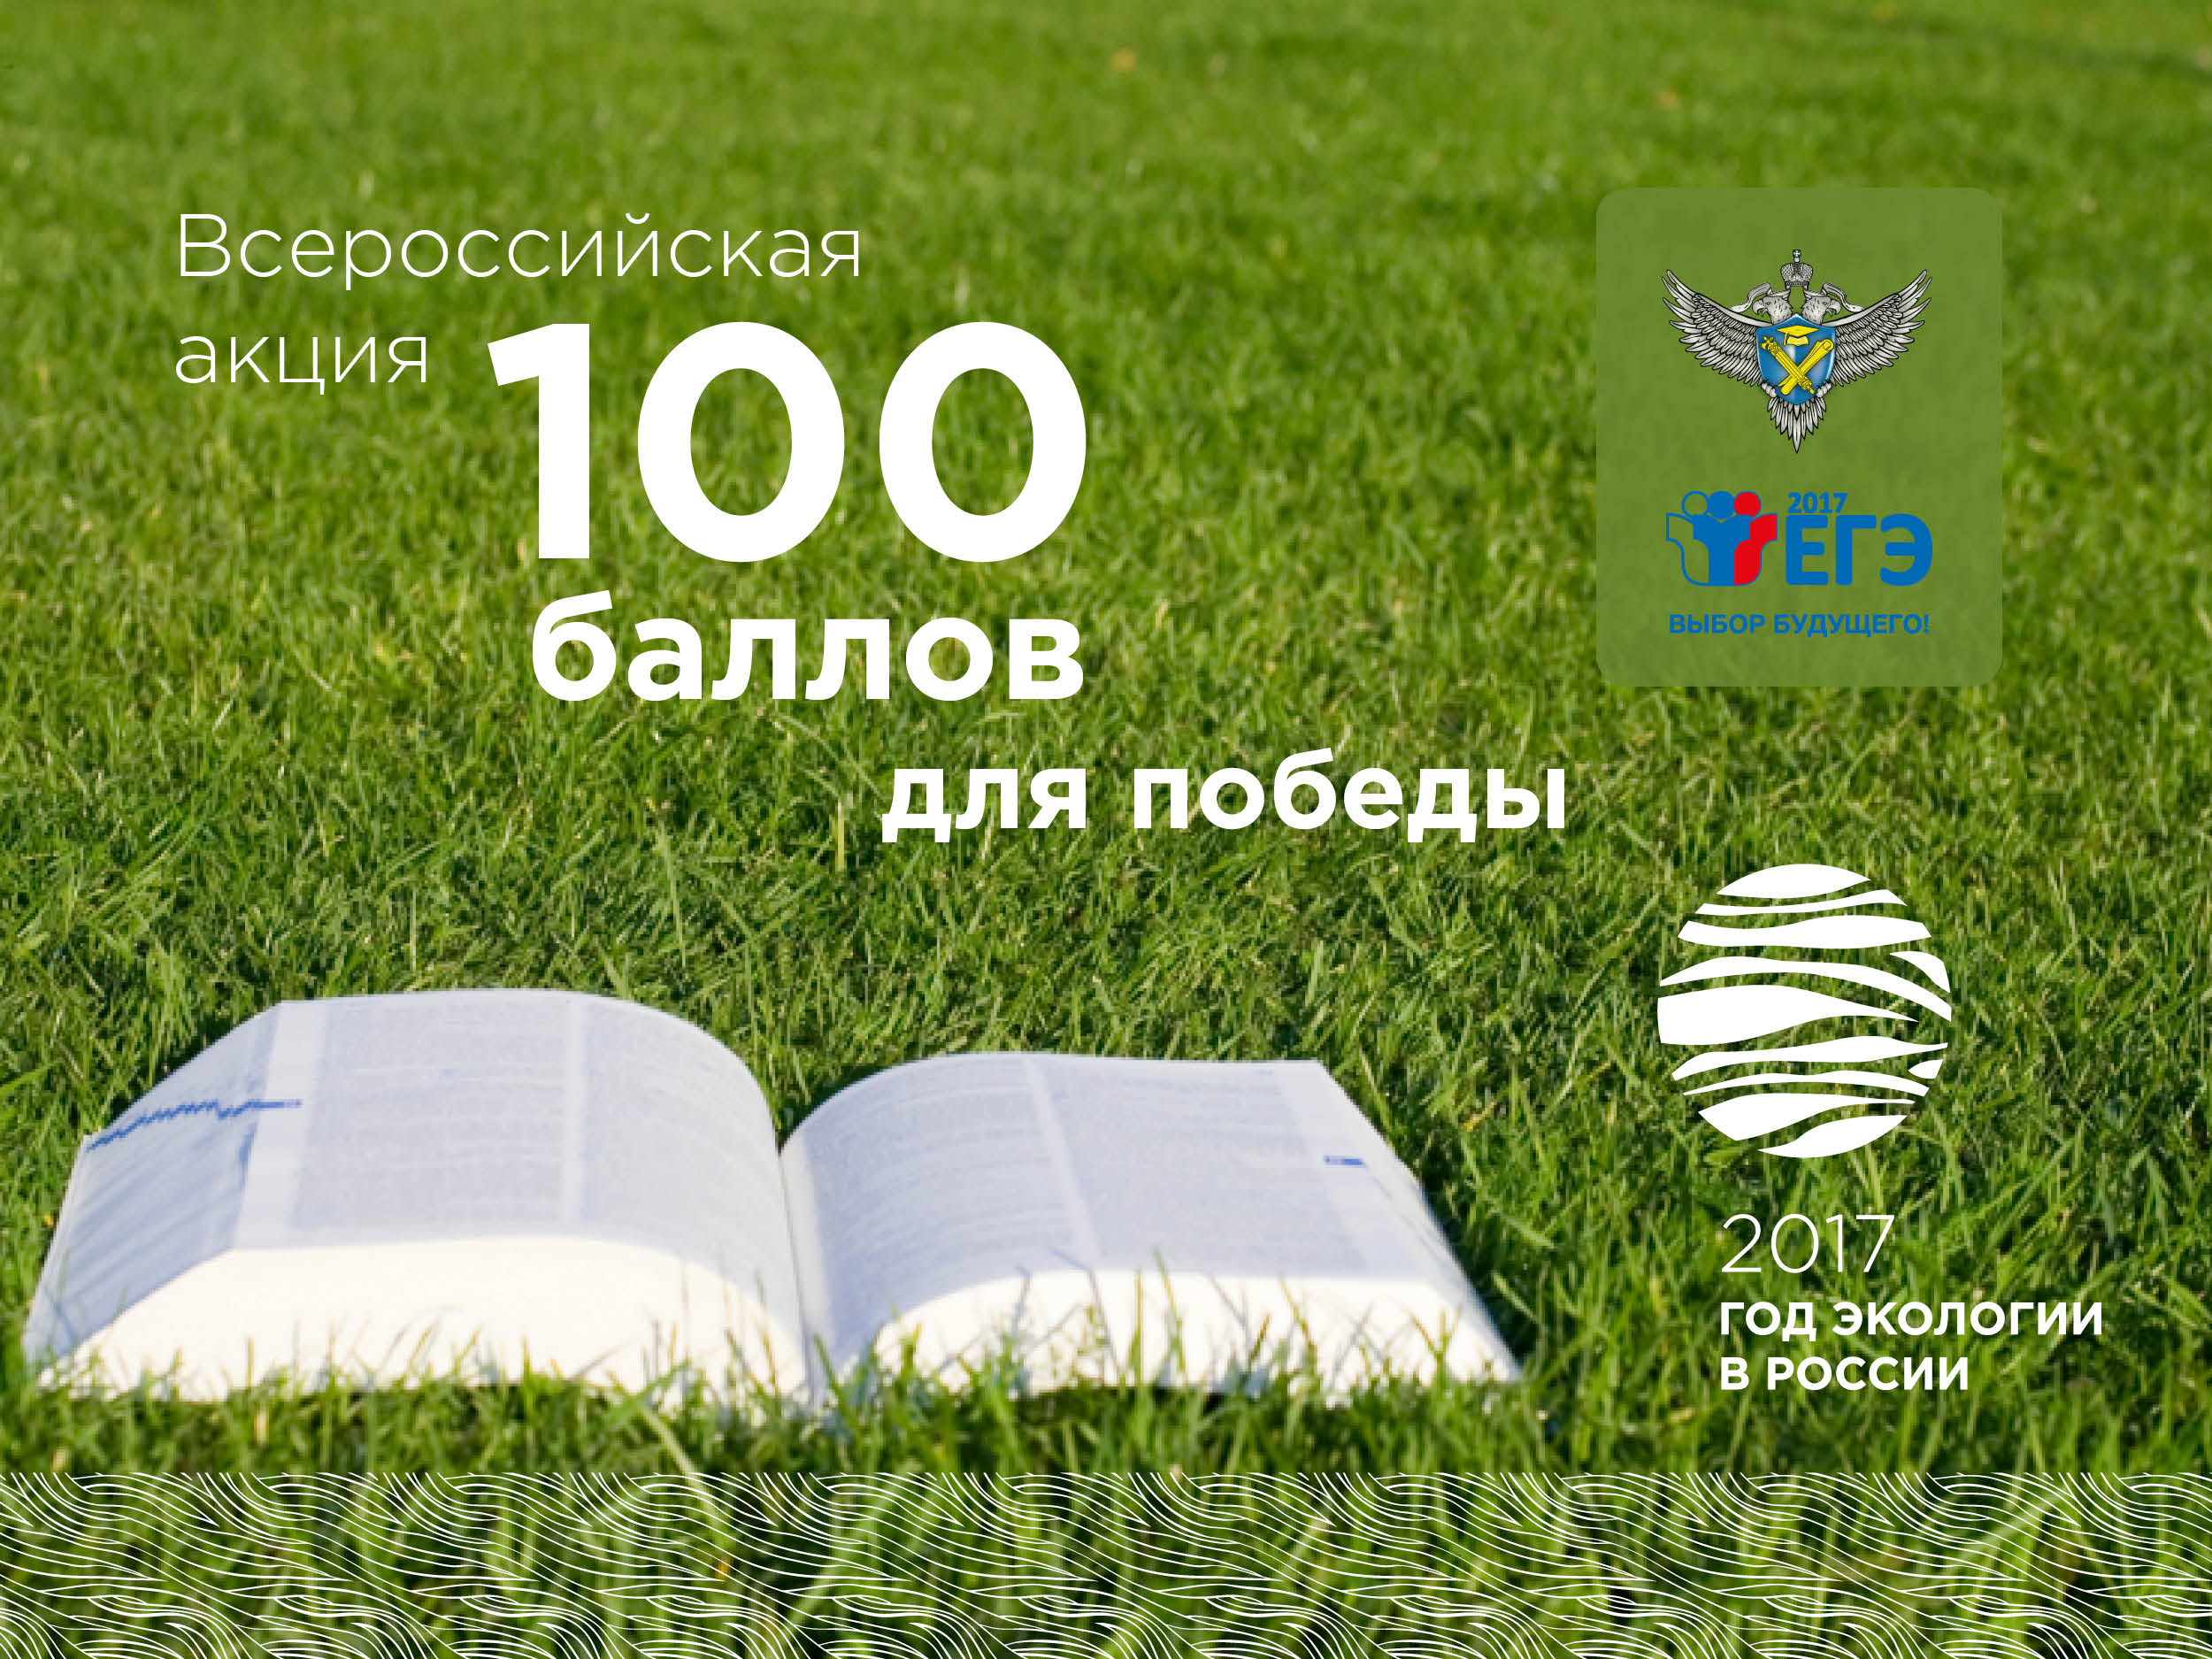 4 апреля в Кабардино-Балкарской Республике стартует Всероссийская акция "100 баллов для победы"